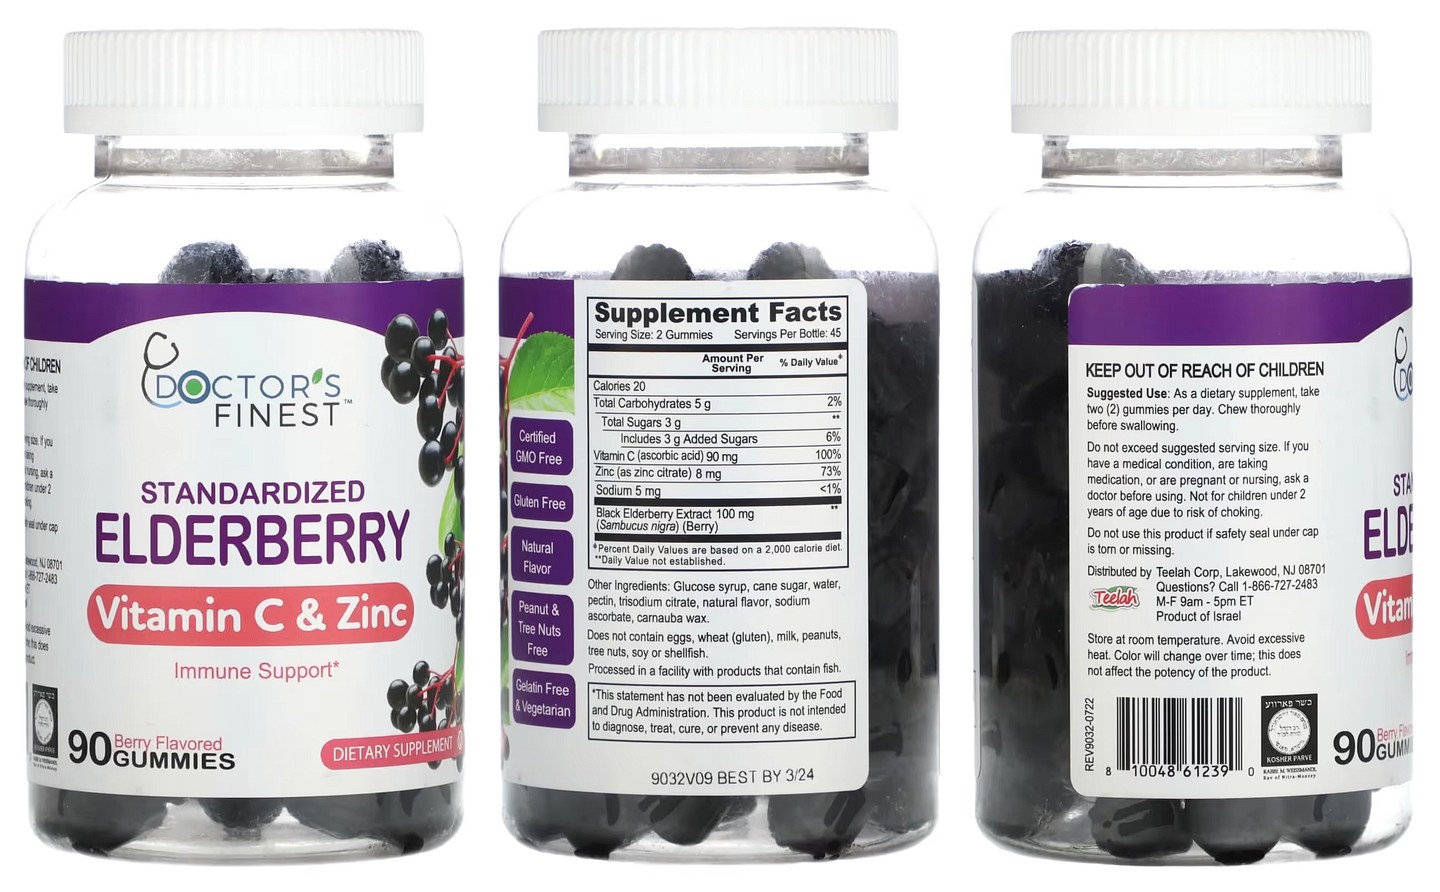 Doctor's Finest, Standardized Elderberry packaging